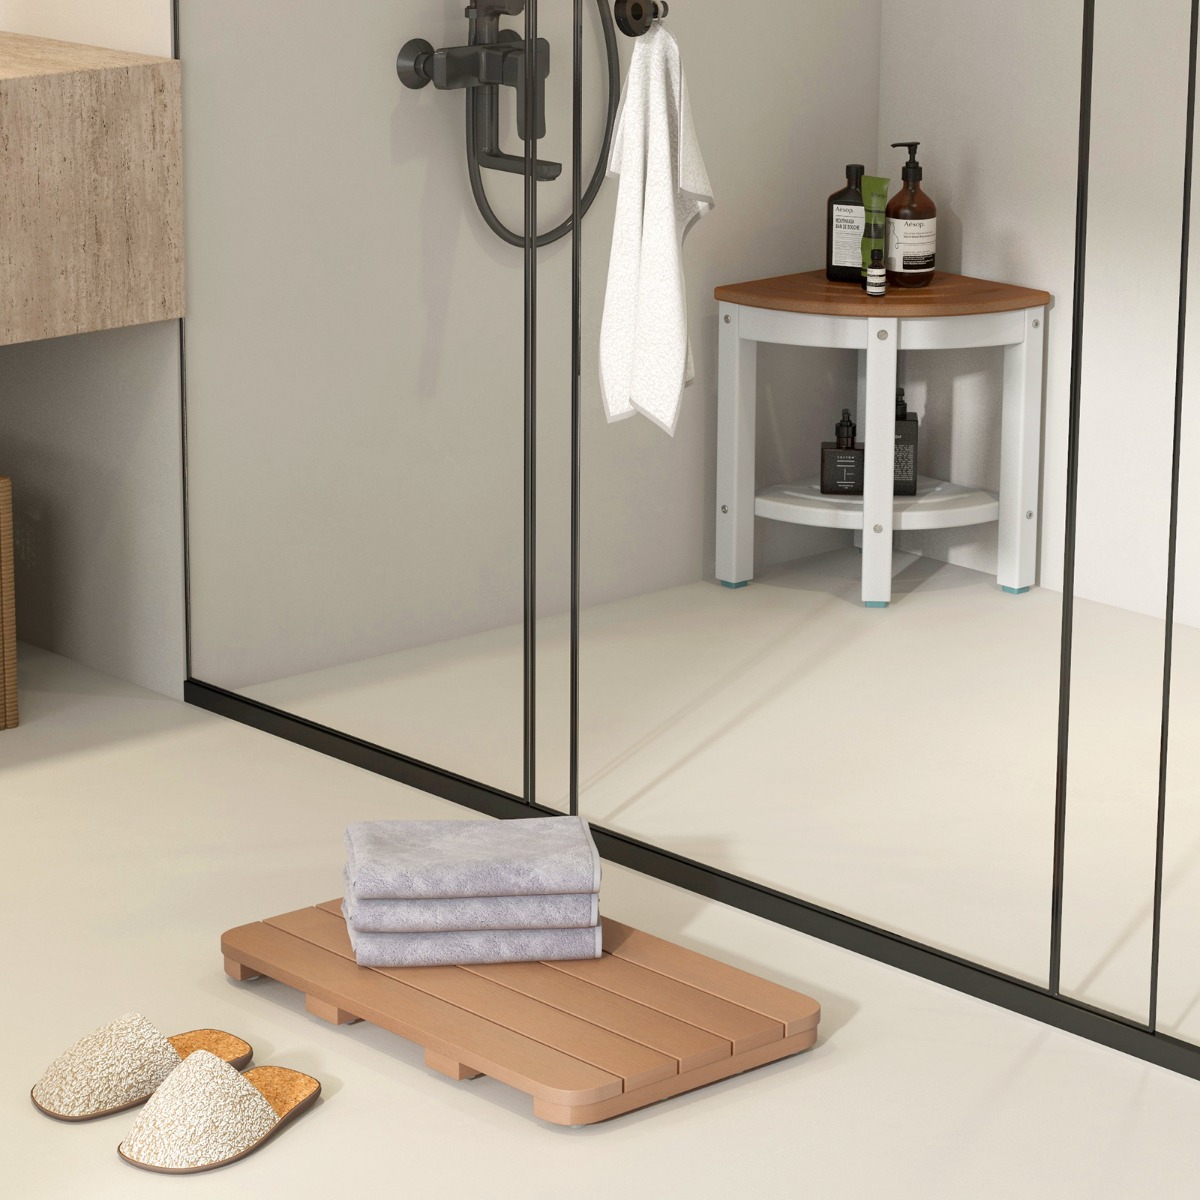 55 x 34 cm Toilettenmatte aus Hips Holz-Design Badematte bis 150kg Belastbar Badvorleger Braun